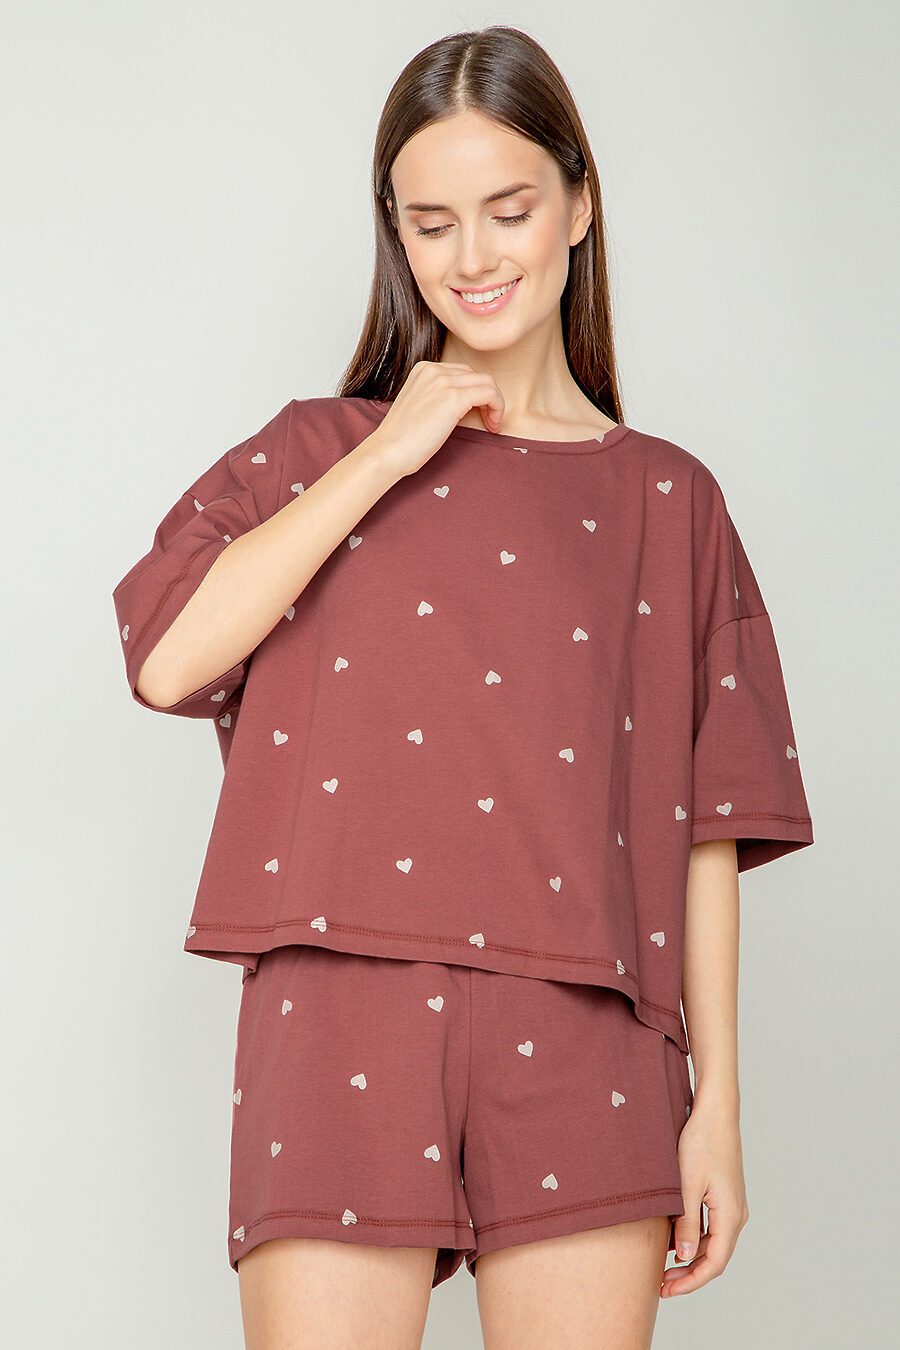 Пижама для женщин TRIKOZZA 796225 купить оптом от производителя. Совместная покупка женской одежды в OptMoyo